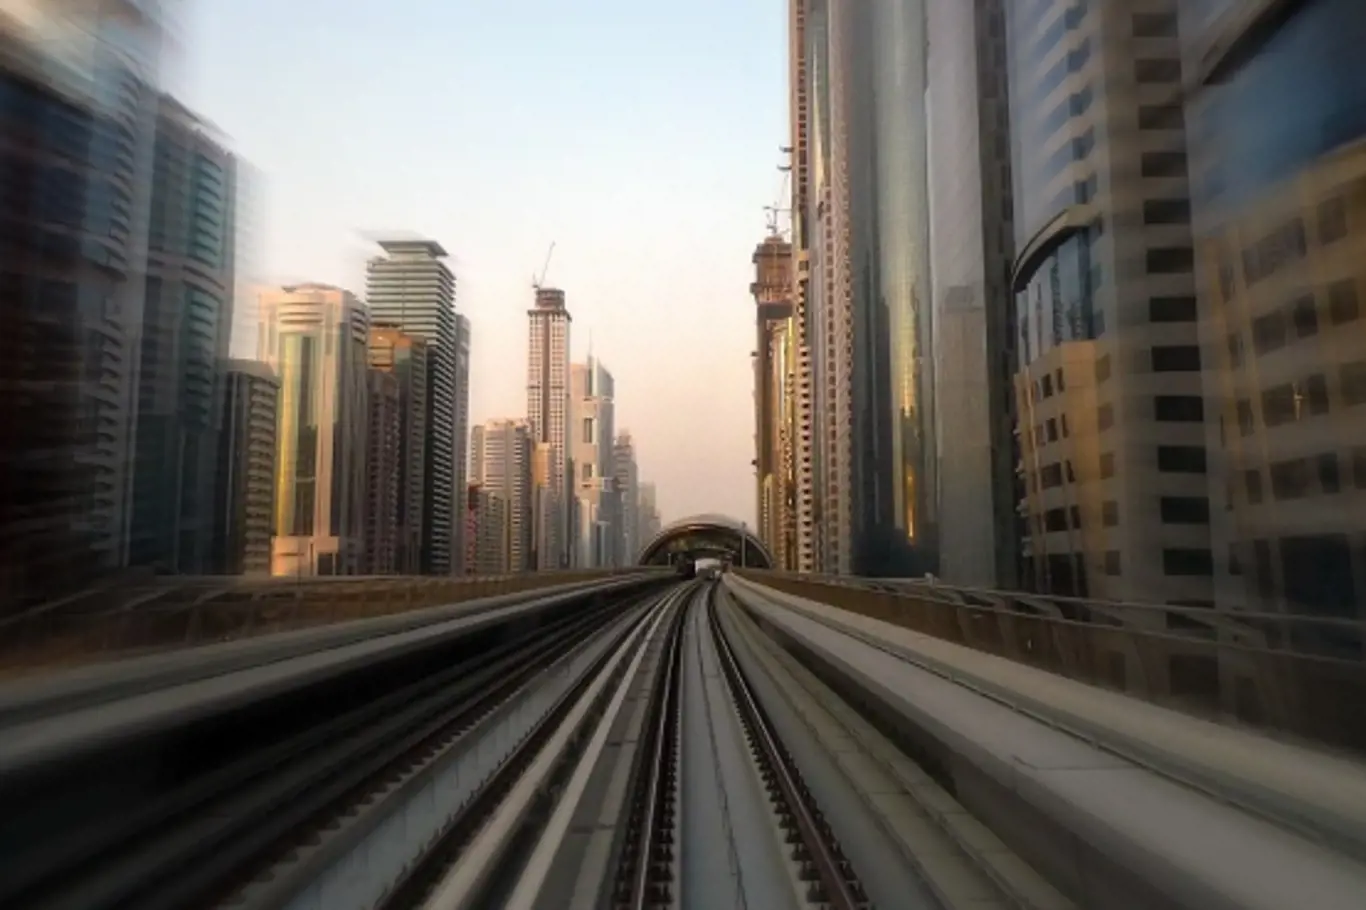 Dubajské metro nemá řidiče. Sedět v prvním voze je zážitek